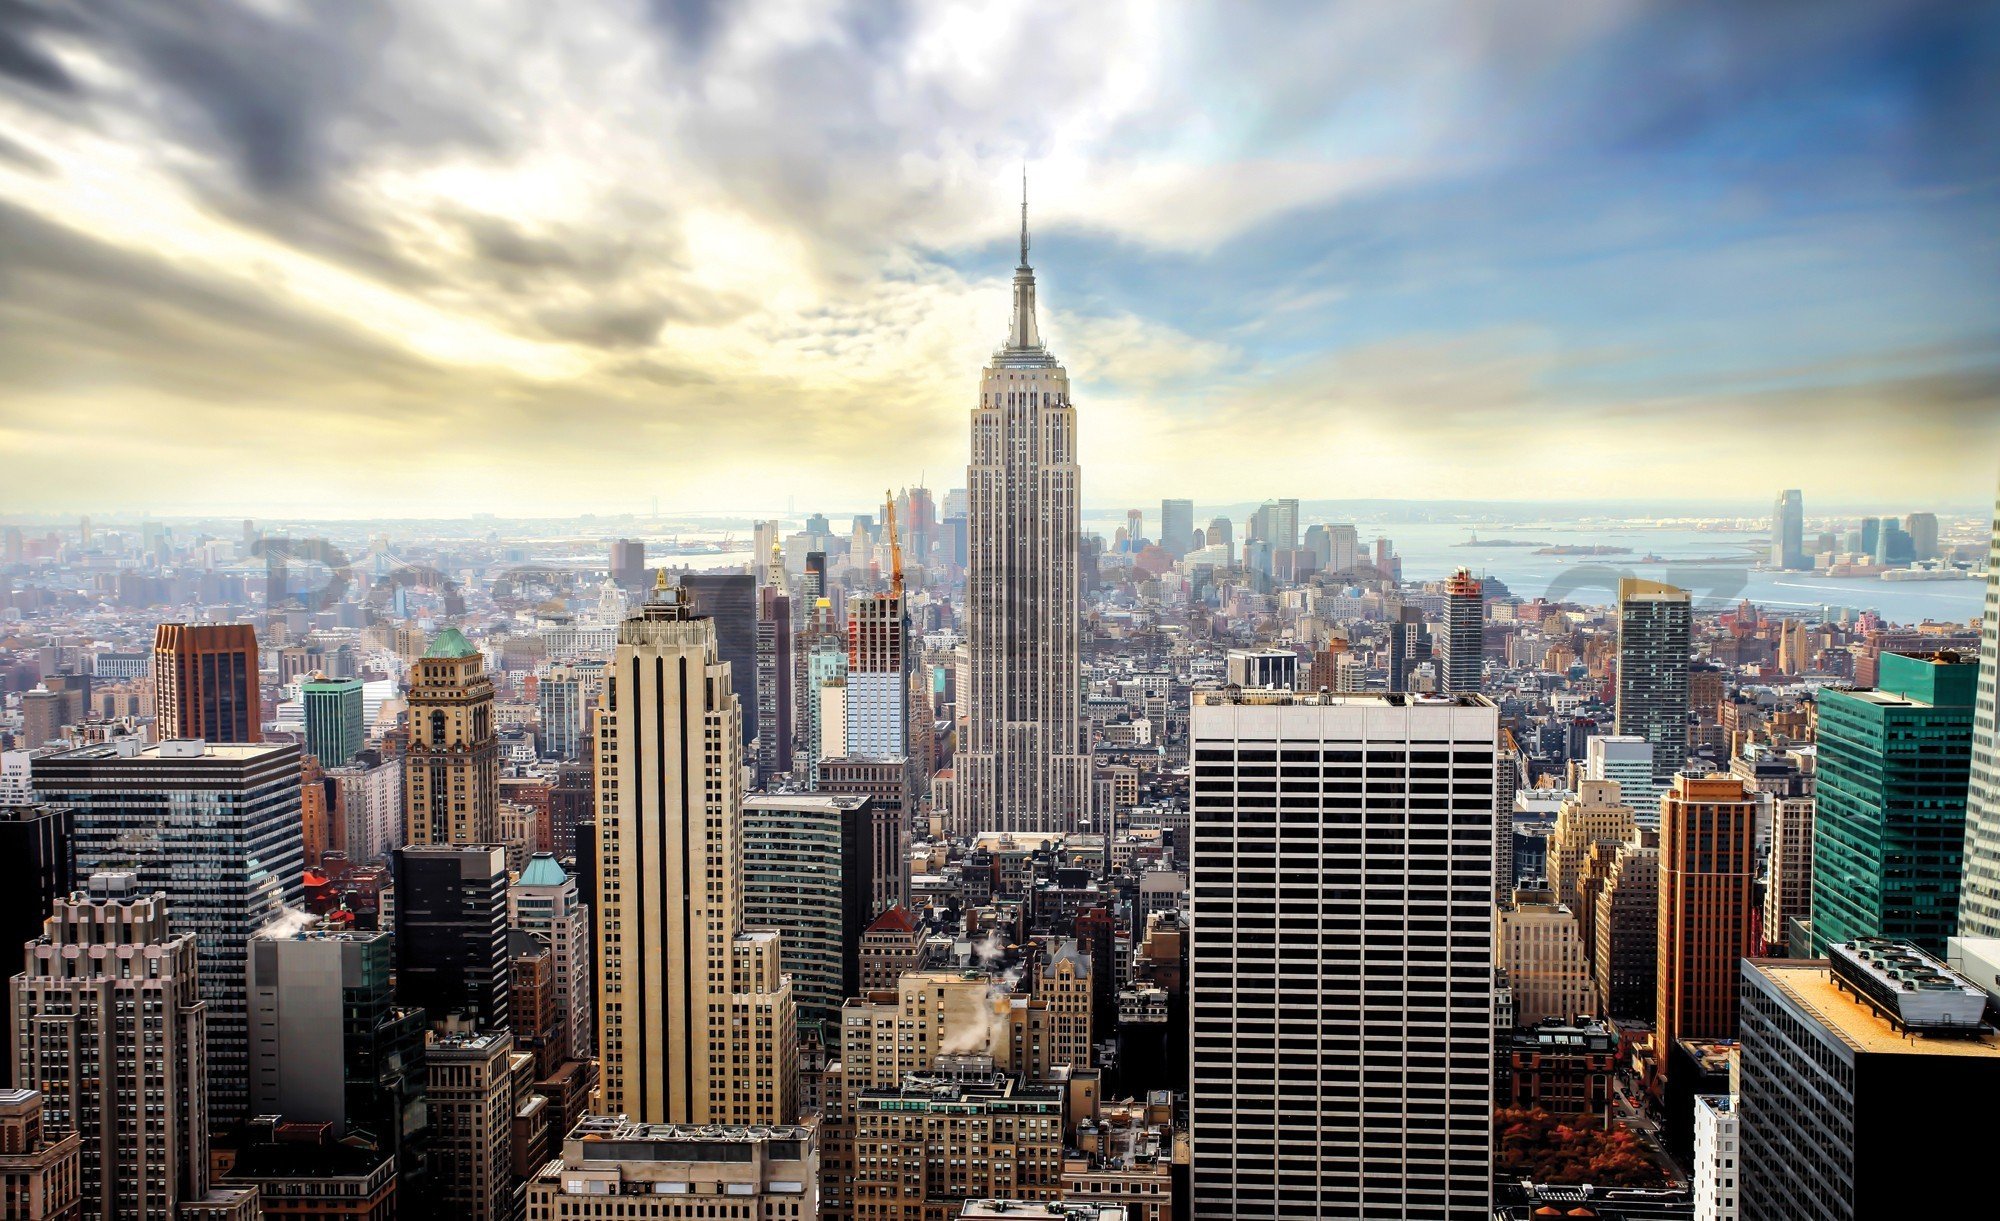 Fototapeta vliesová: Pohled na New York - 416x254 cm